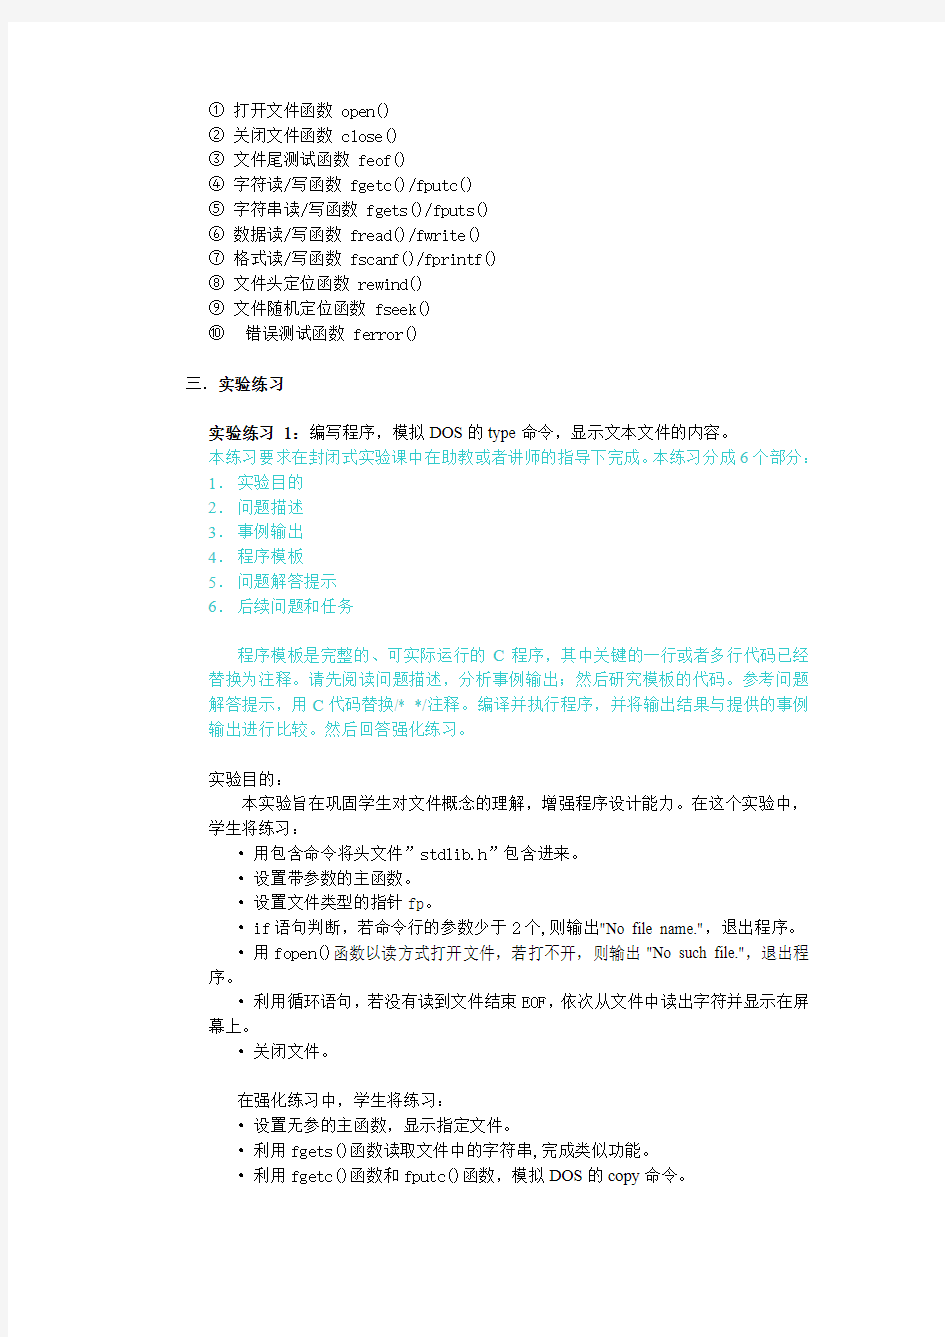 2014湖南大学c语言实验题目及其答案 (5)